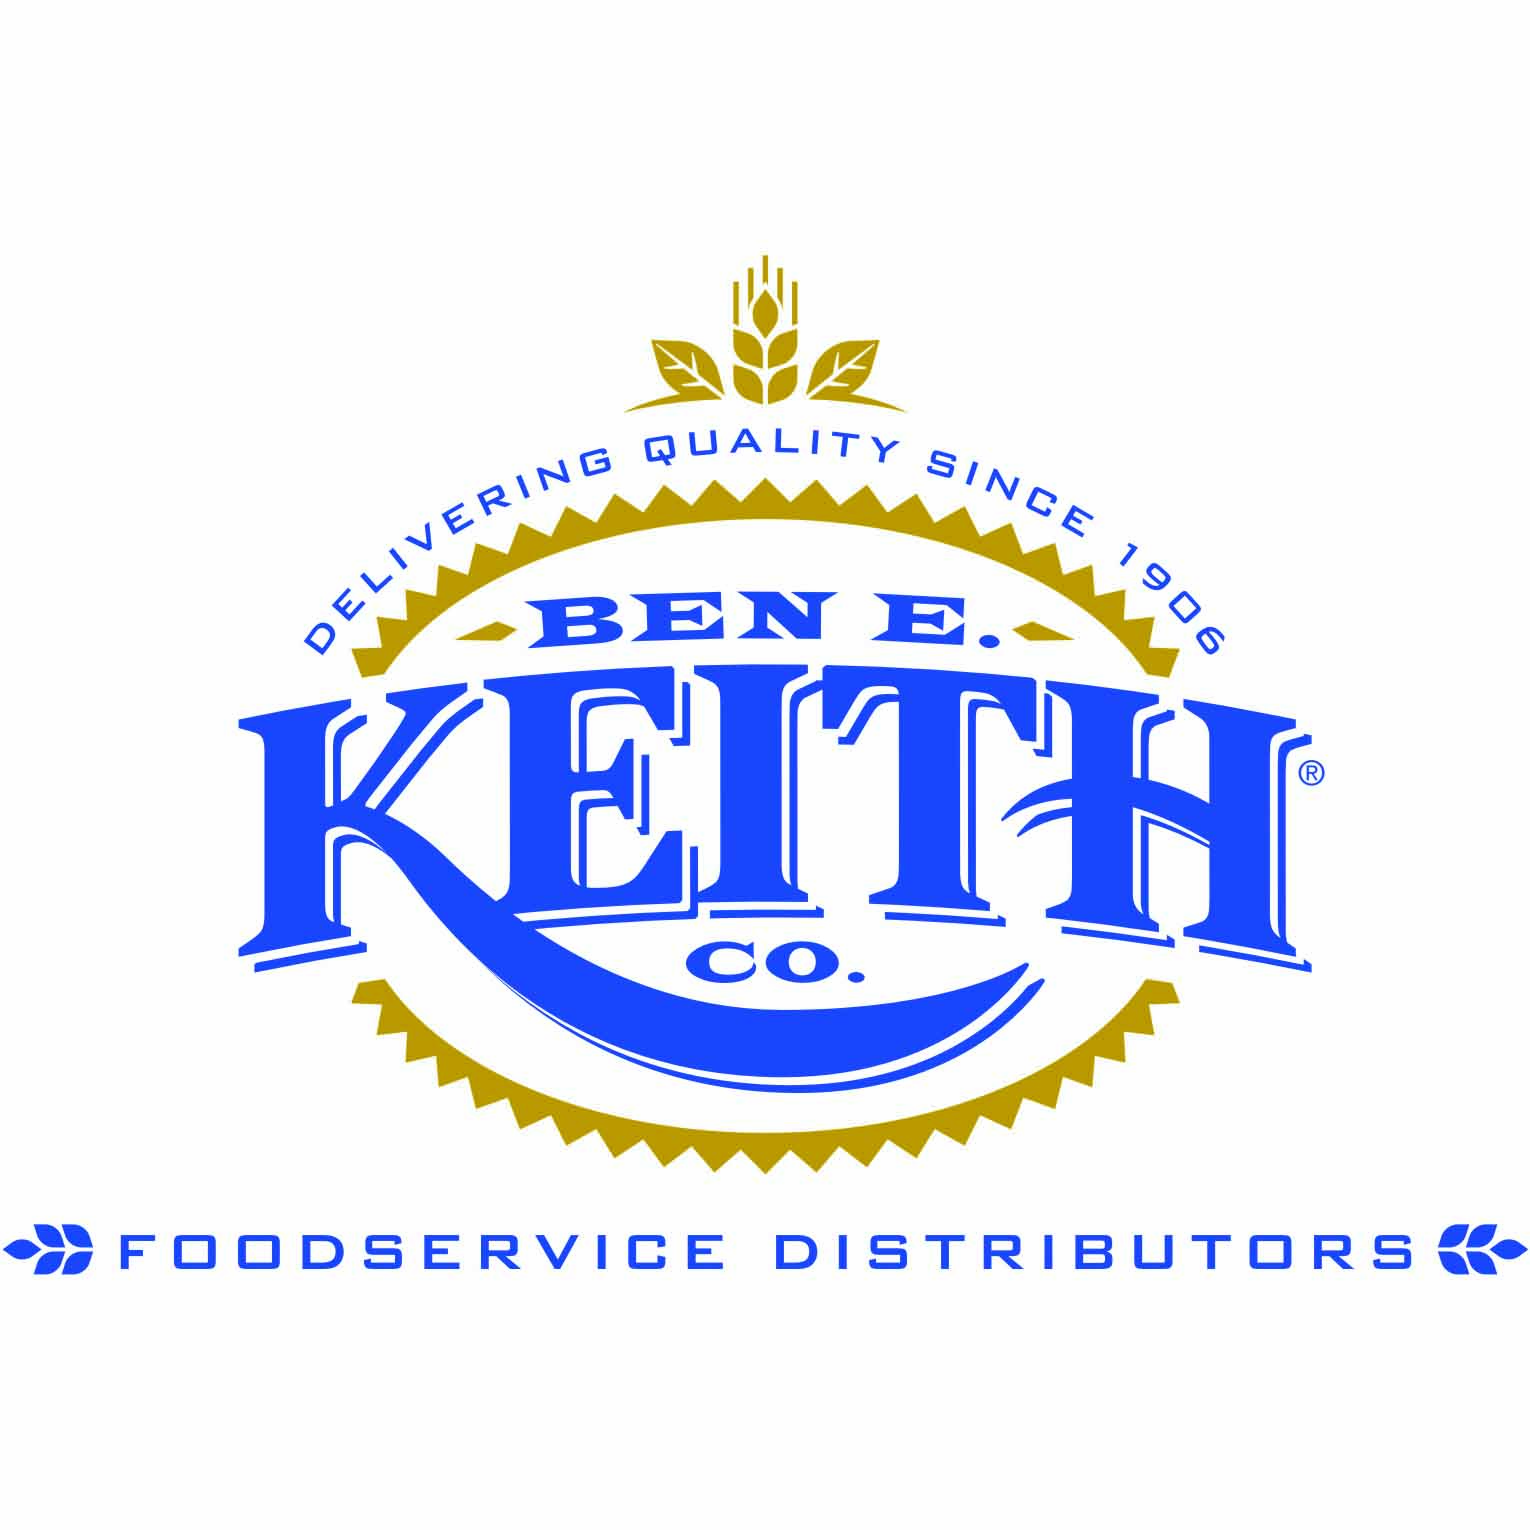 Ben-E-Keith logo.jpg